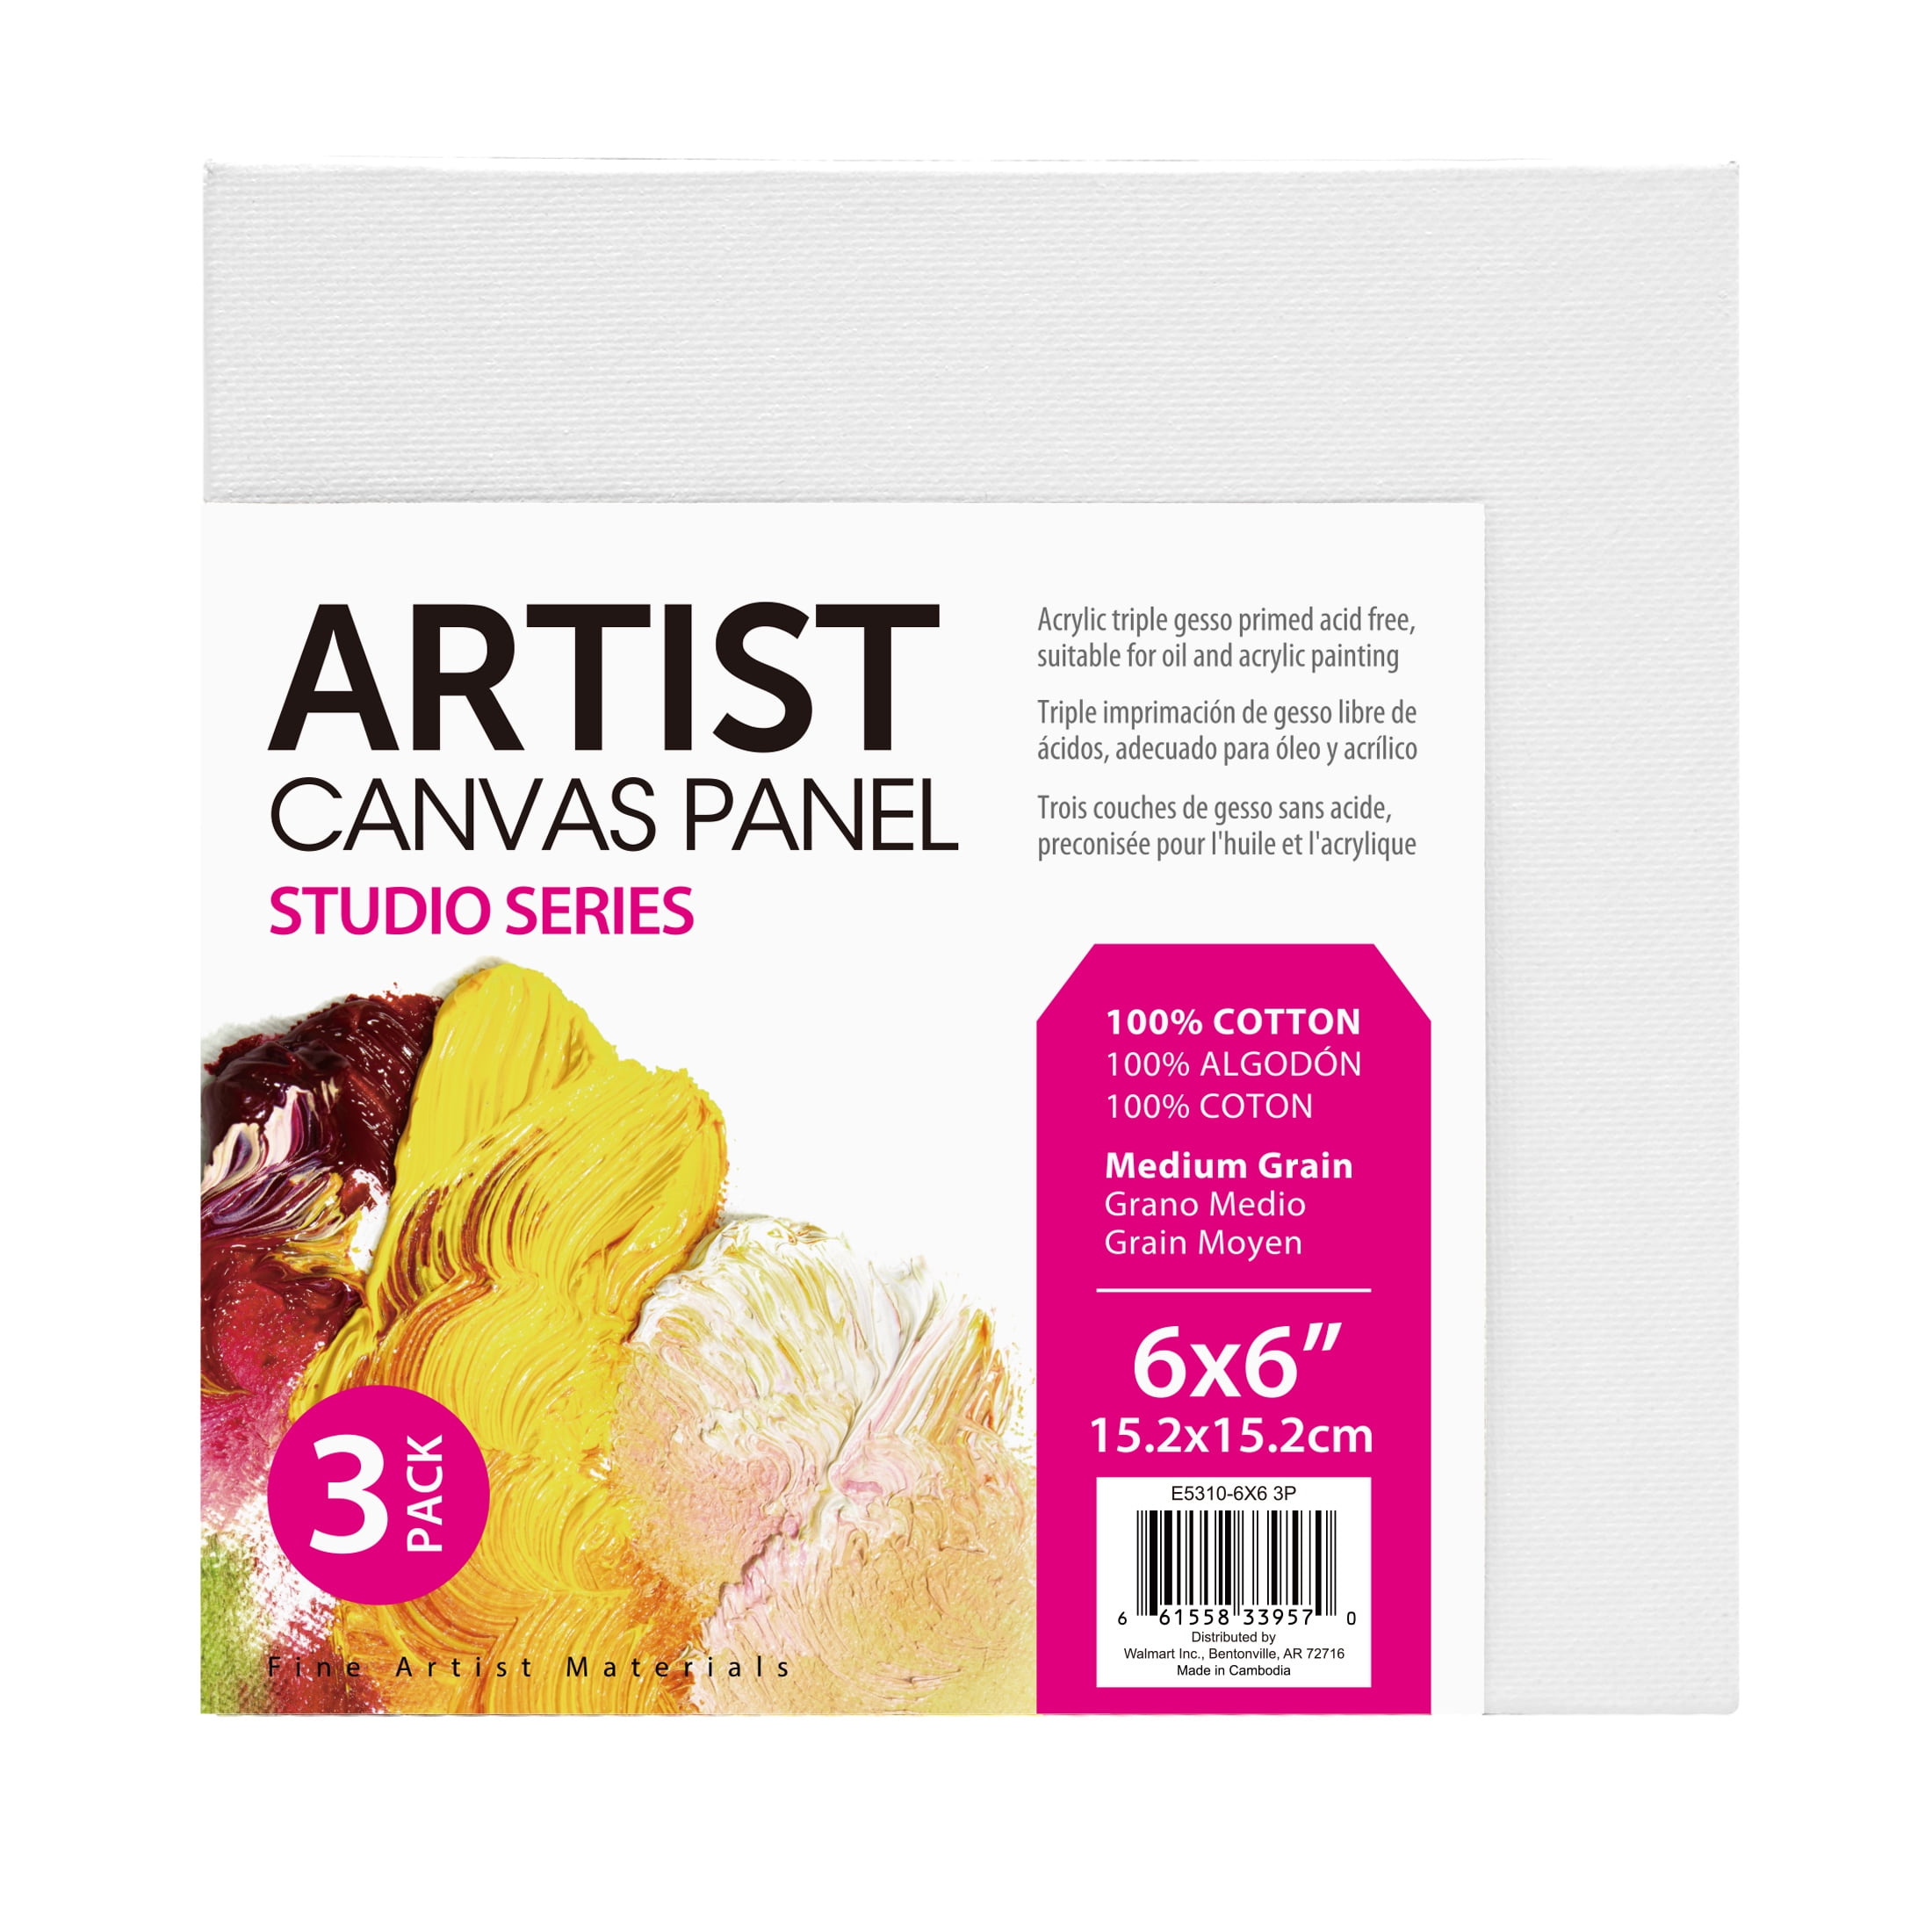 Studio Canvas Panel, 100% Cotton Acid Free Canvas, 6"X6", 3 Pieces